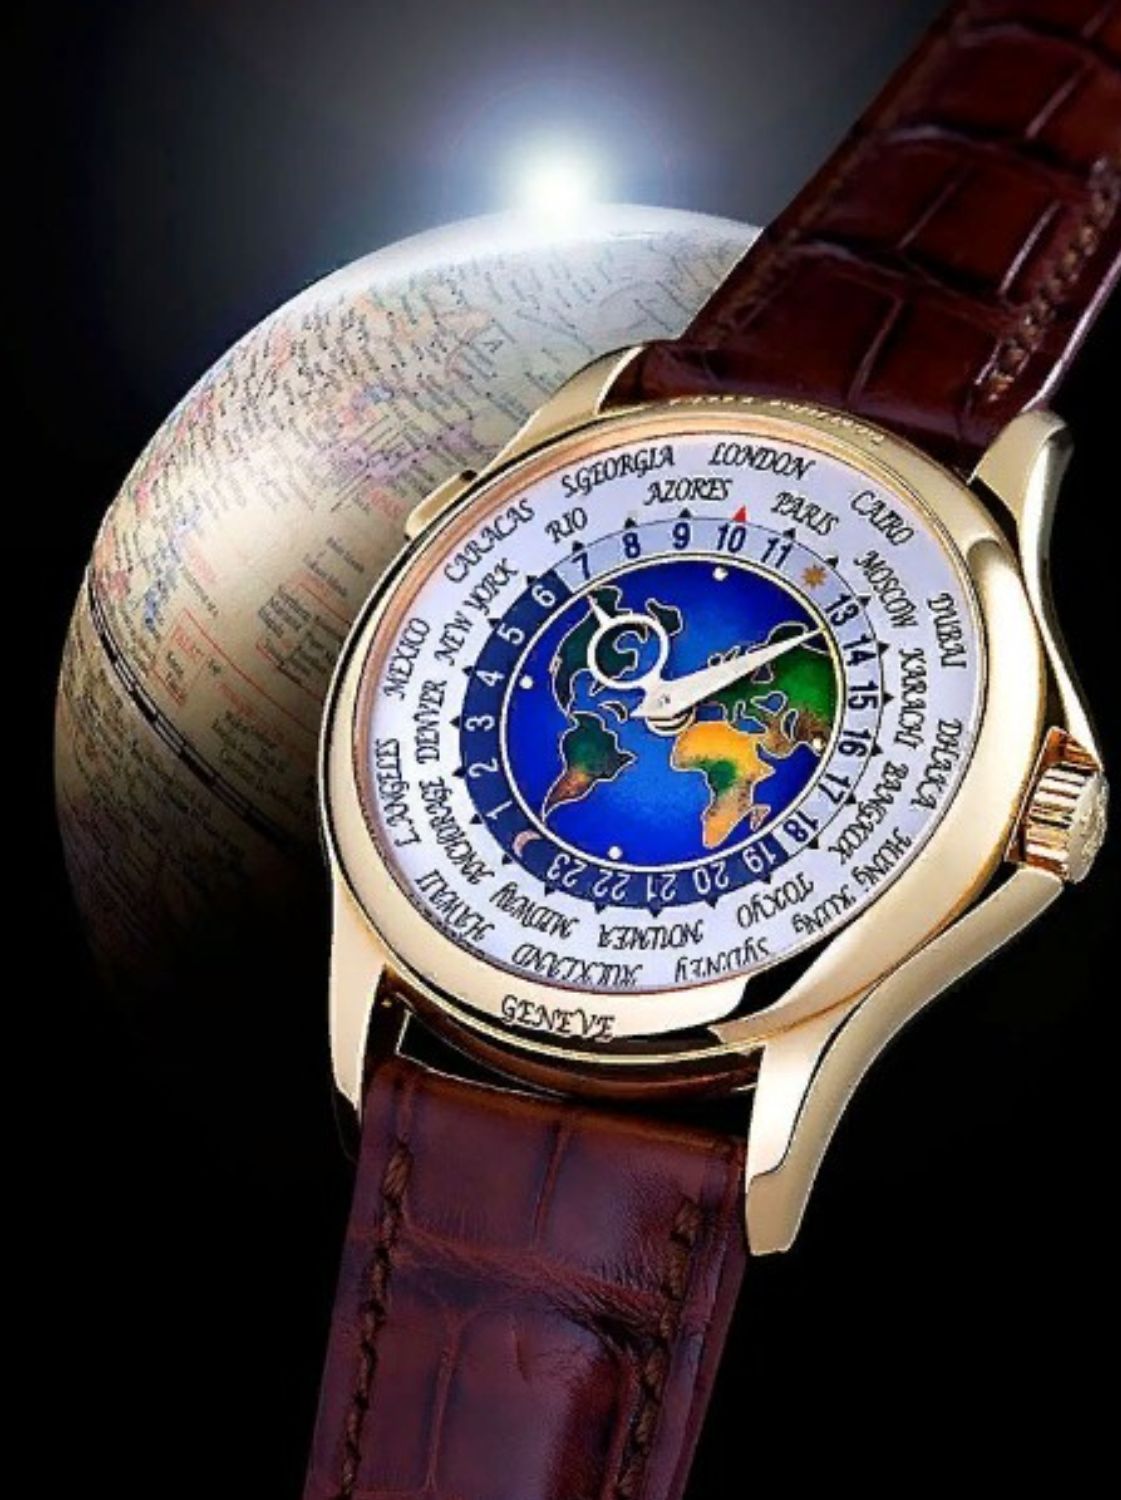 ТОП-10 самых дорогих наручных часов в мире от известных брендов